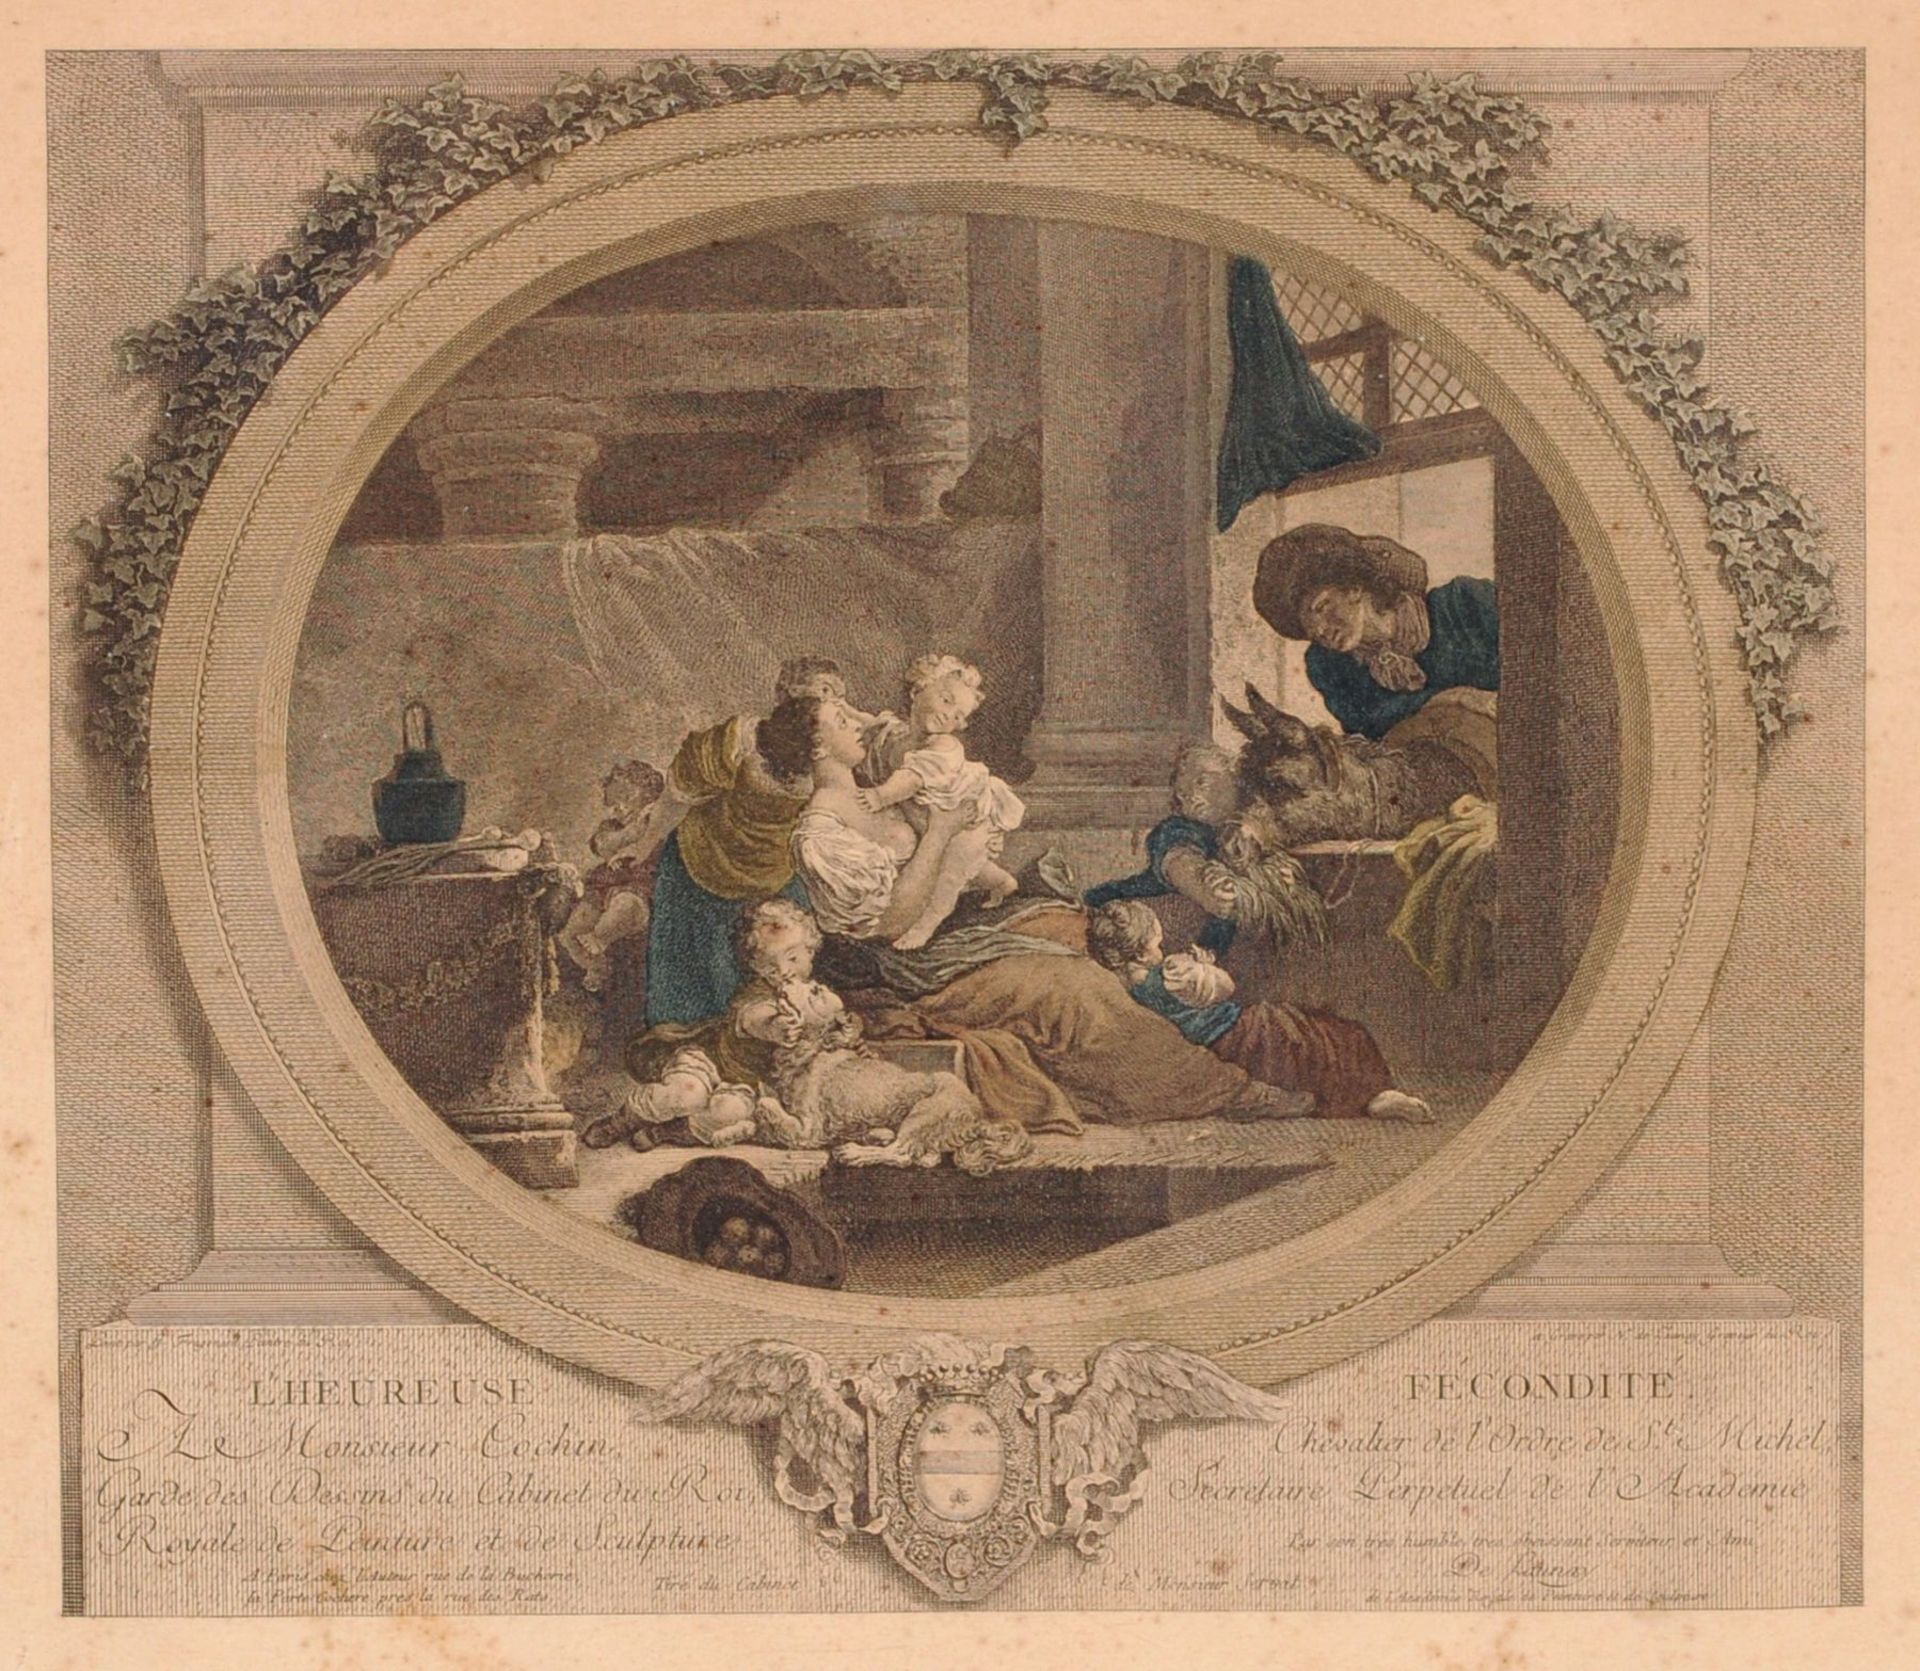 Nicolas de Launay (nach Fragonard) "L'heureuse Fécondité" / "Le Petit Predicateur". 2. H. 18. Jh. - Bild 2 aus 4